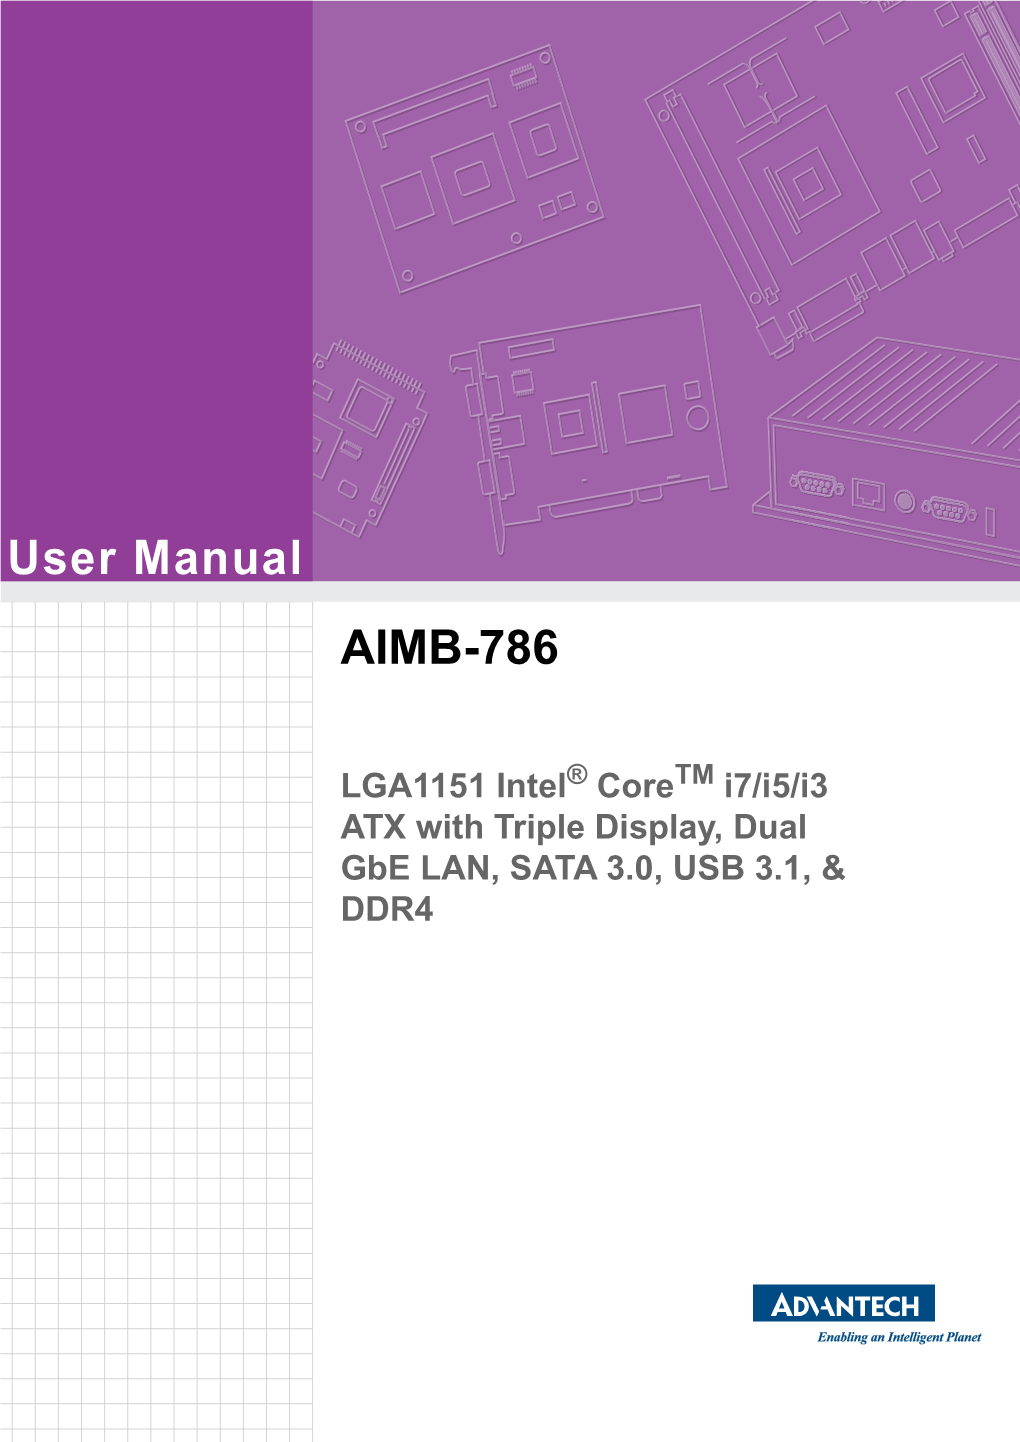 User Manual AIMB-786